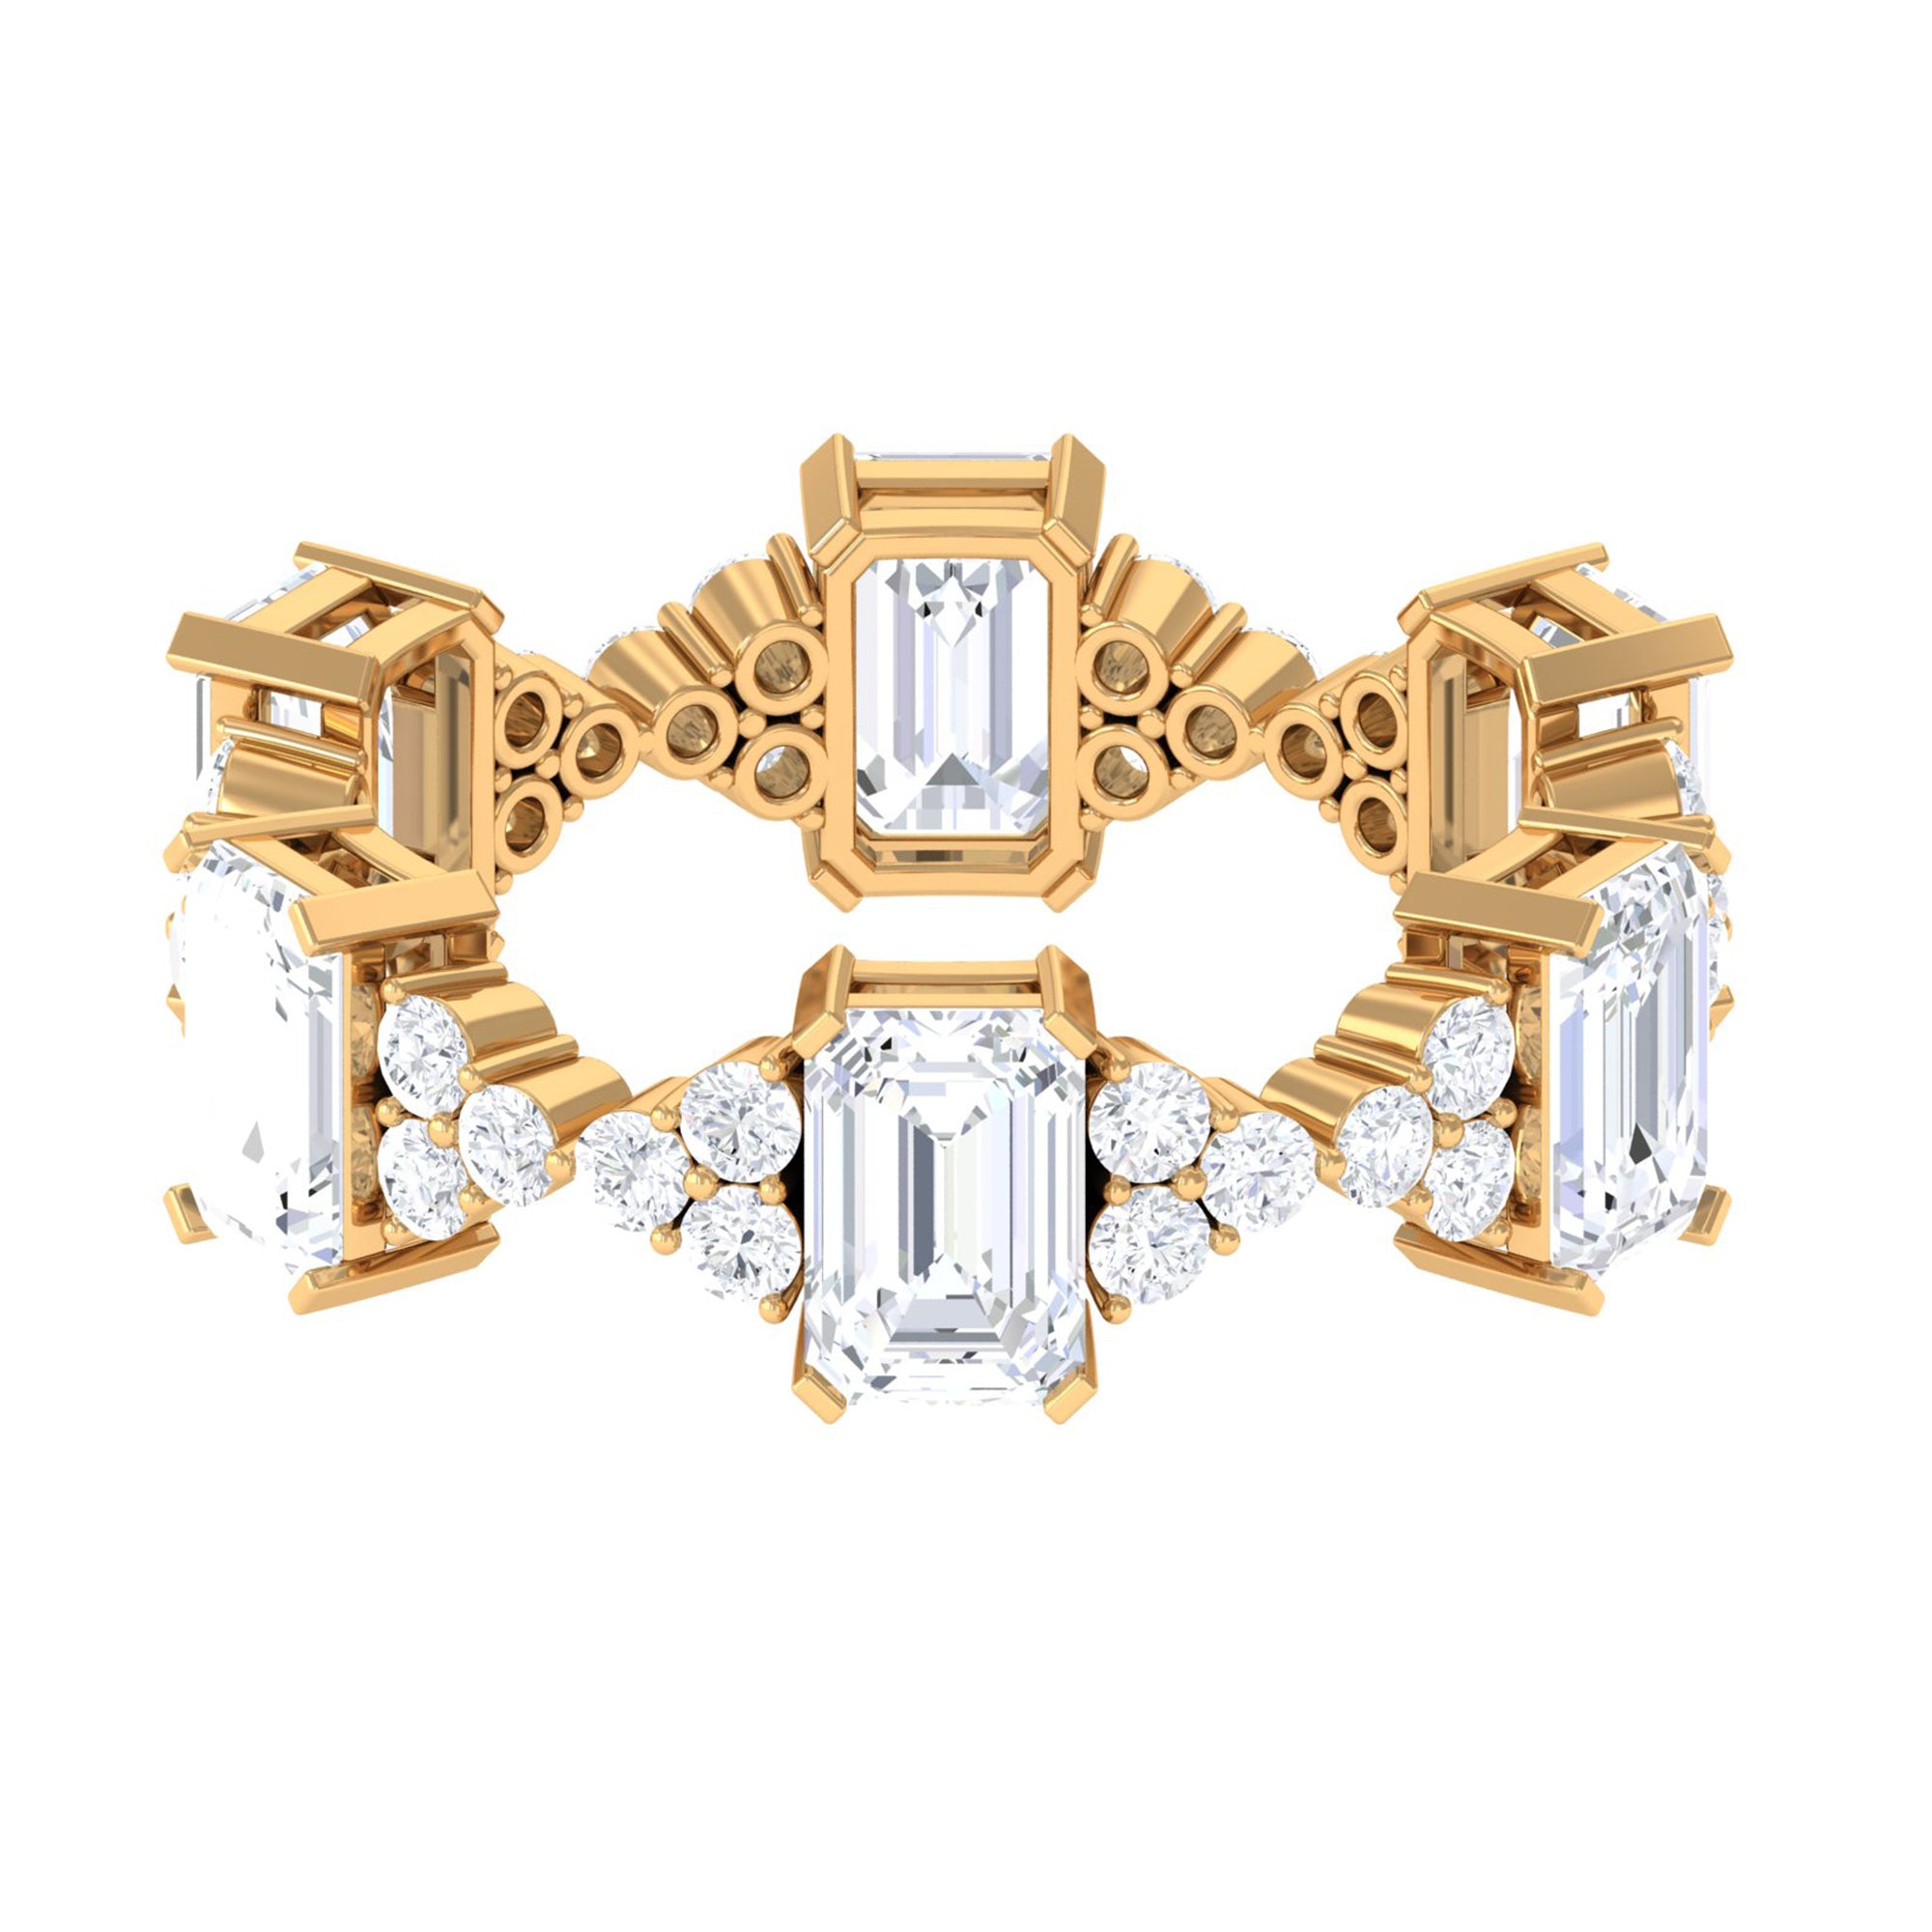 7 CT Designer Zircon Eternity Ring in Prong Setting Zircon - ( AAAA ) - Quality - Rosec Jewels